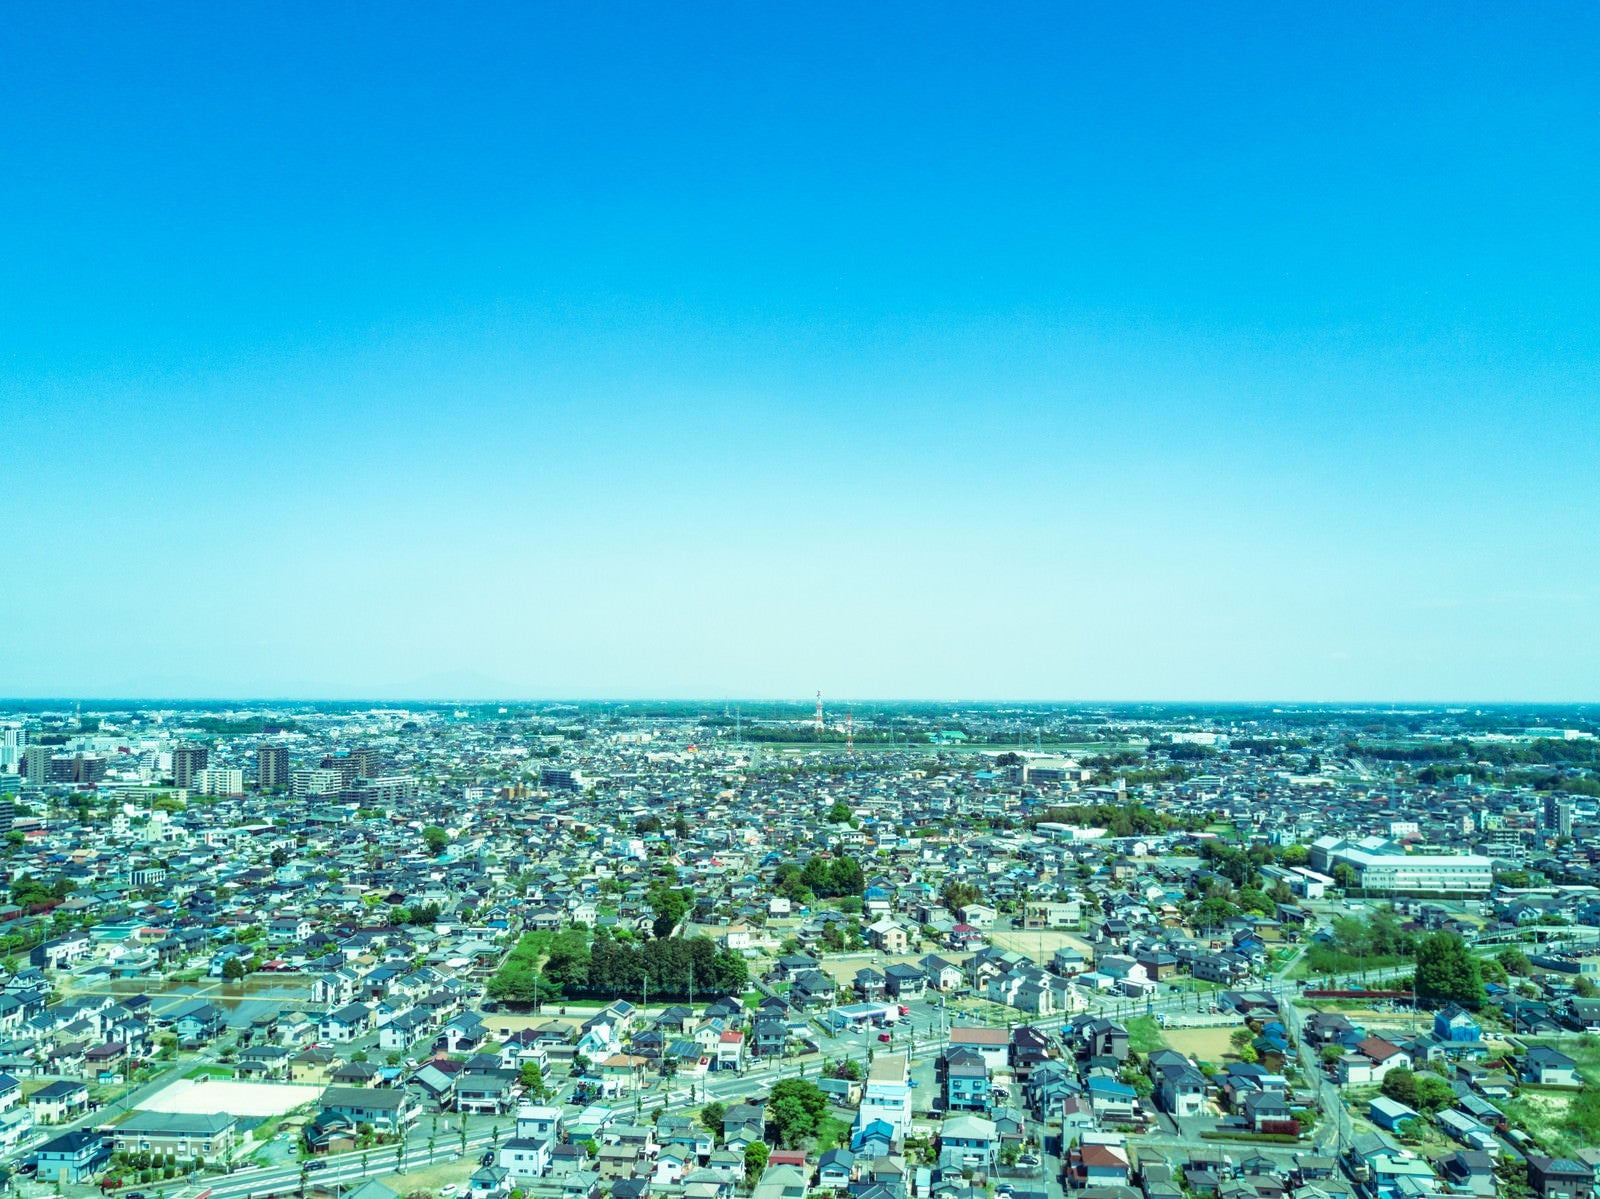 「古河市ドローン練習場上空からの街並み」の写真